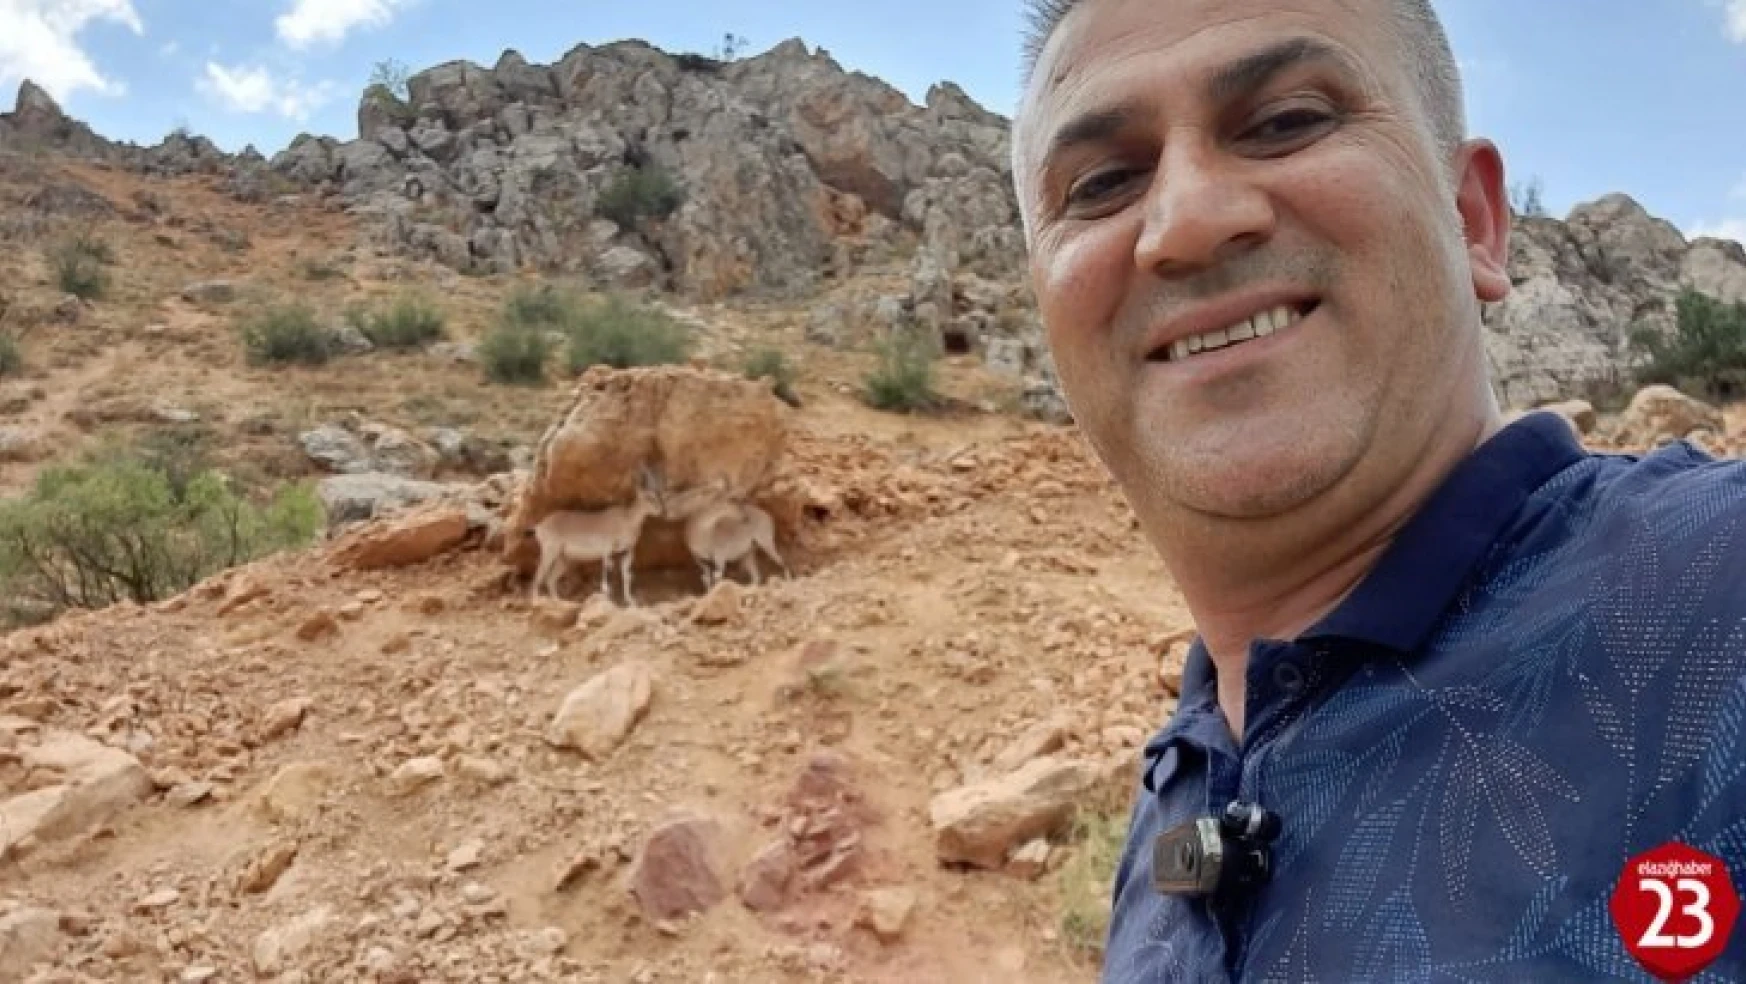 Tunceli'de Yolda Gördüğü Dağ Keçileri İle Diyaloğu İle Gündem Olmuştu, O Anları Anlattı